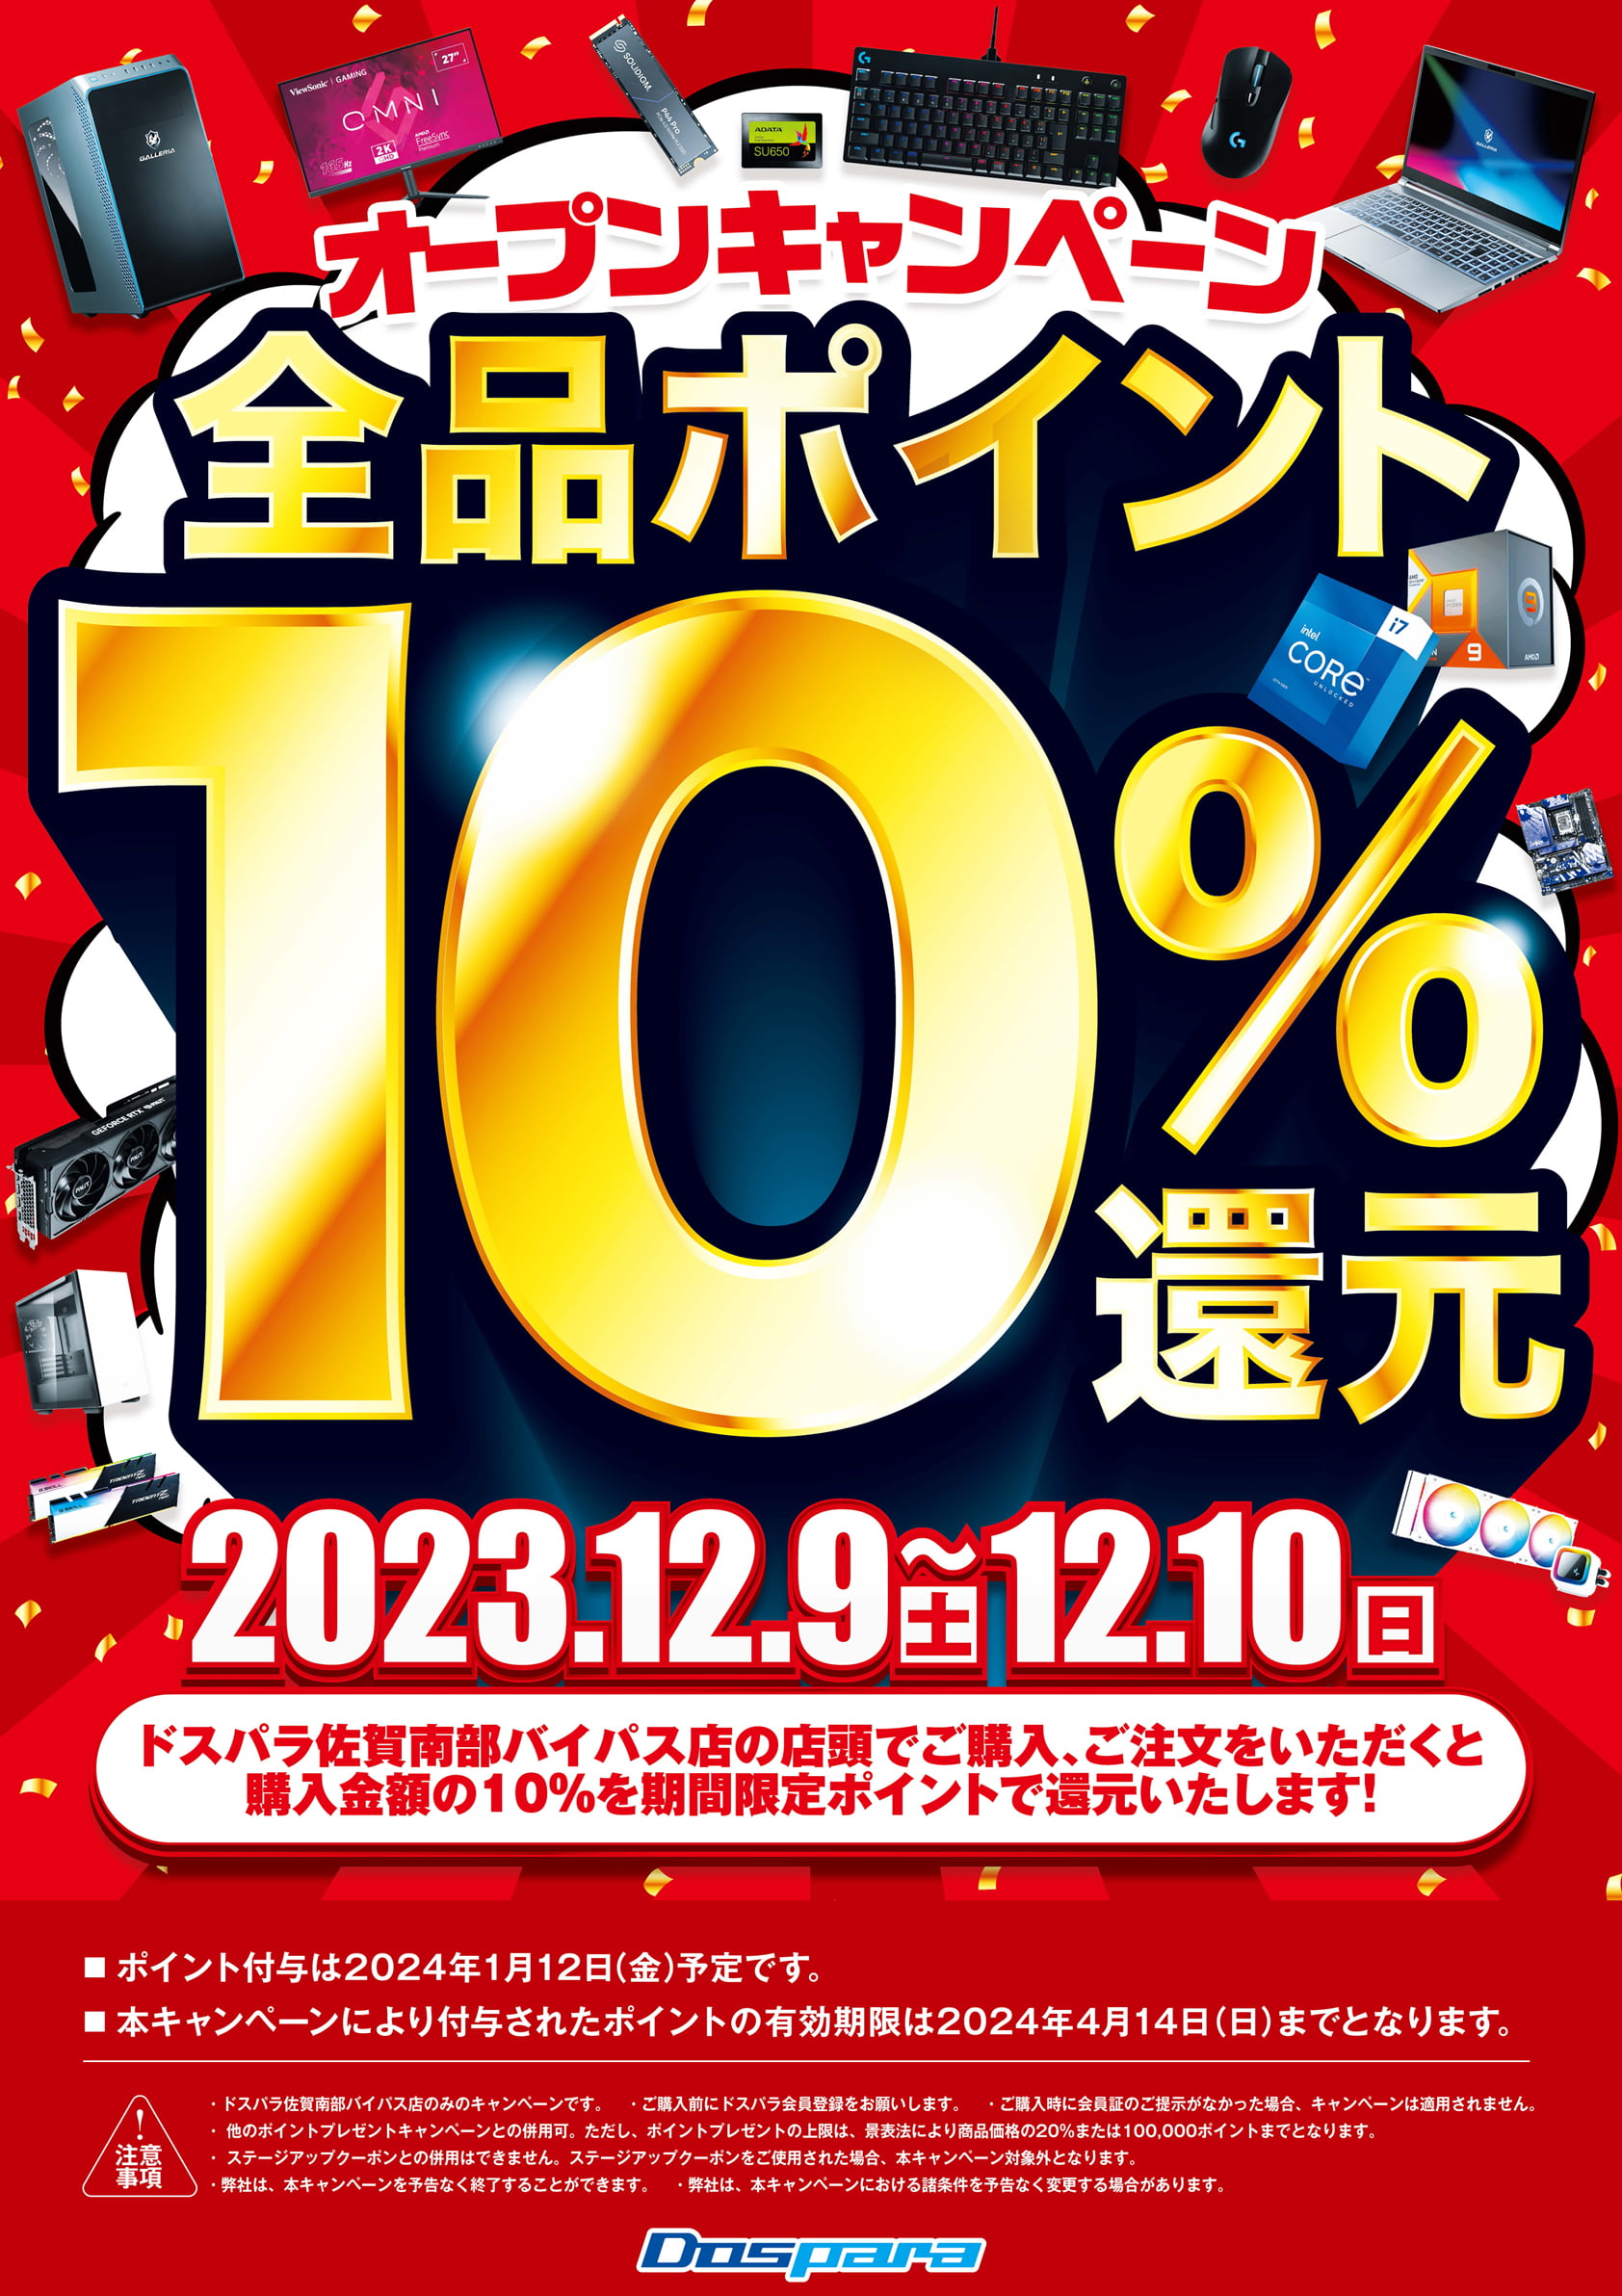 オープンキャンペーン全品ポイント10%還元 2023年12月9日(土)～12月10日(日)